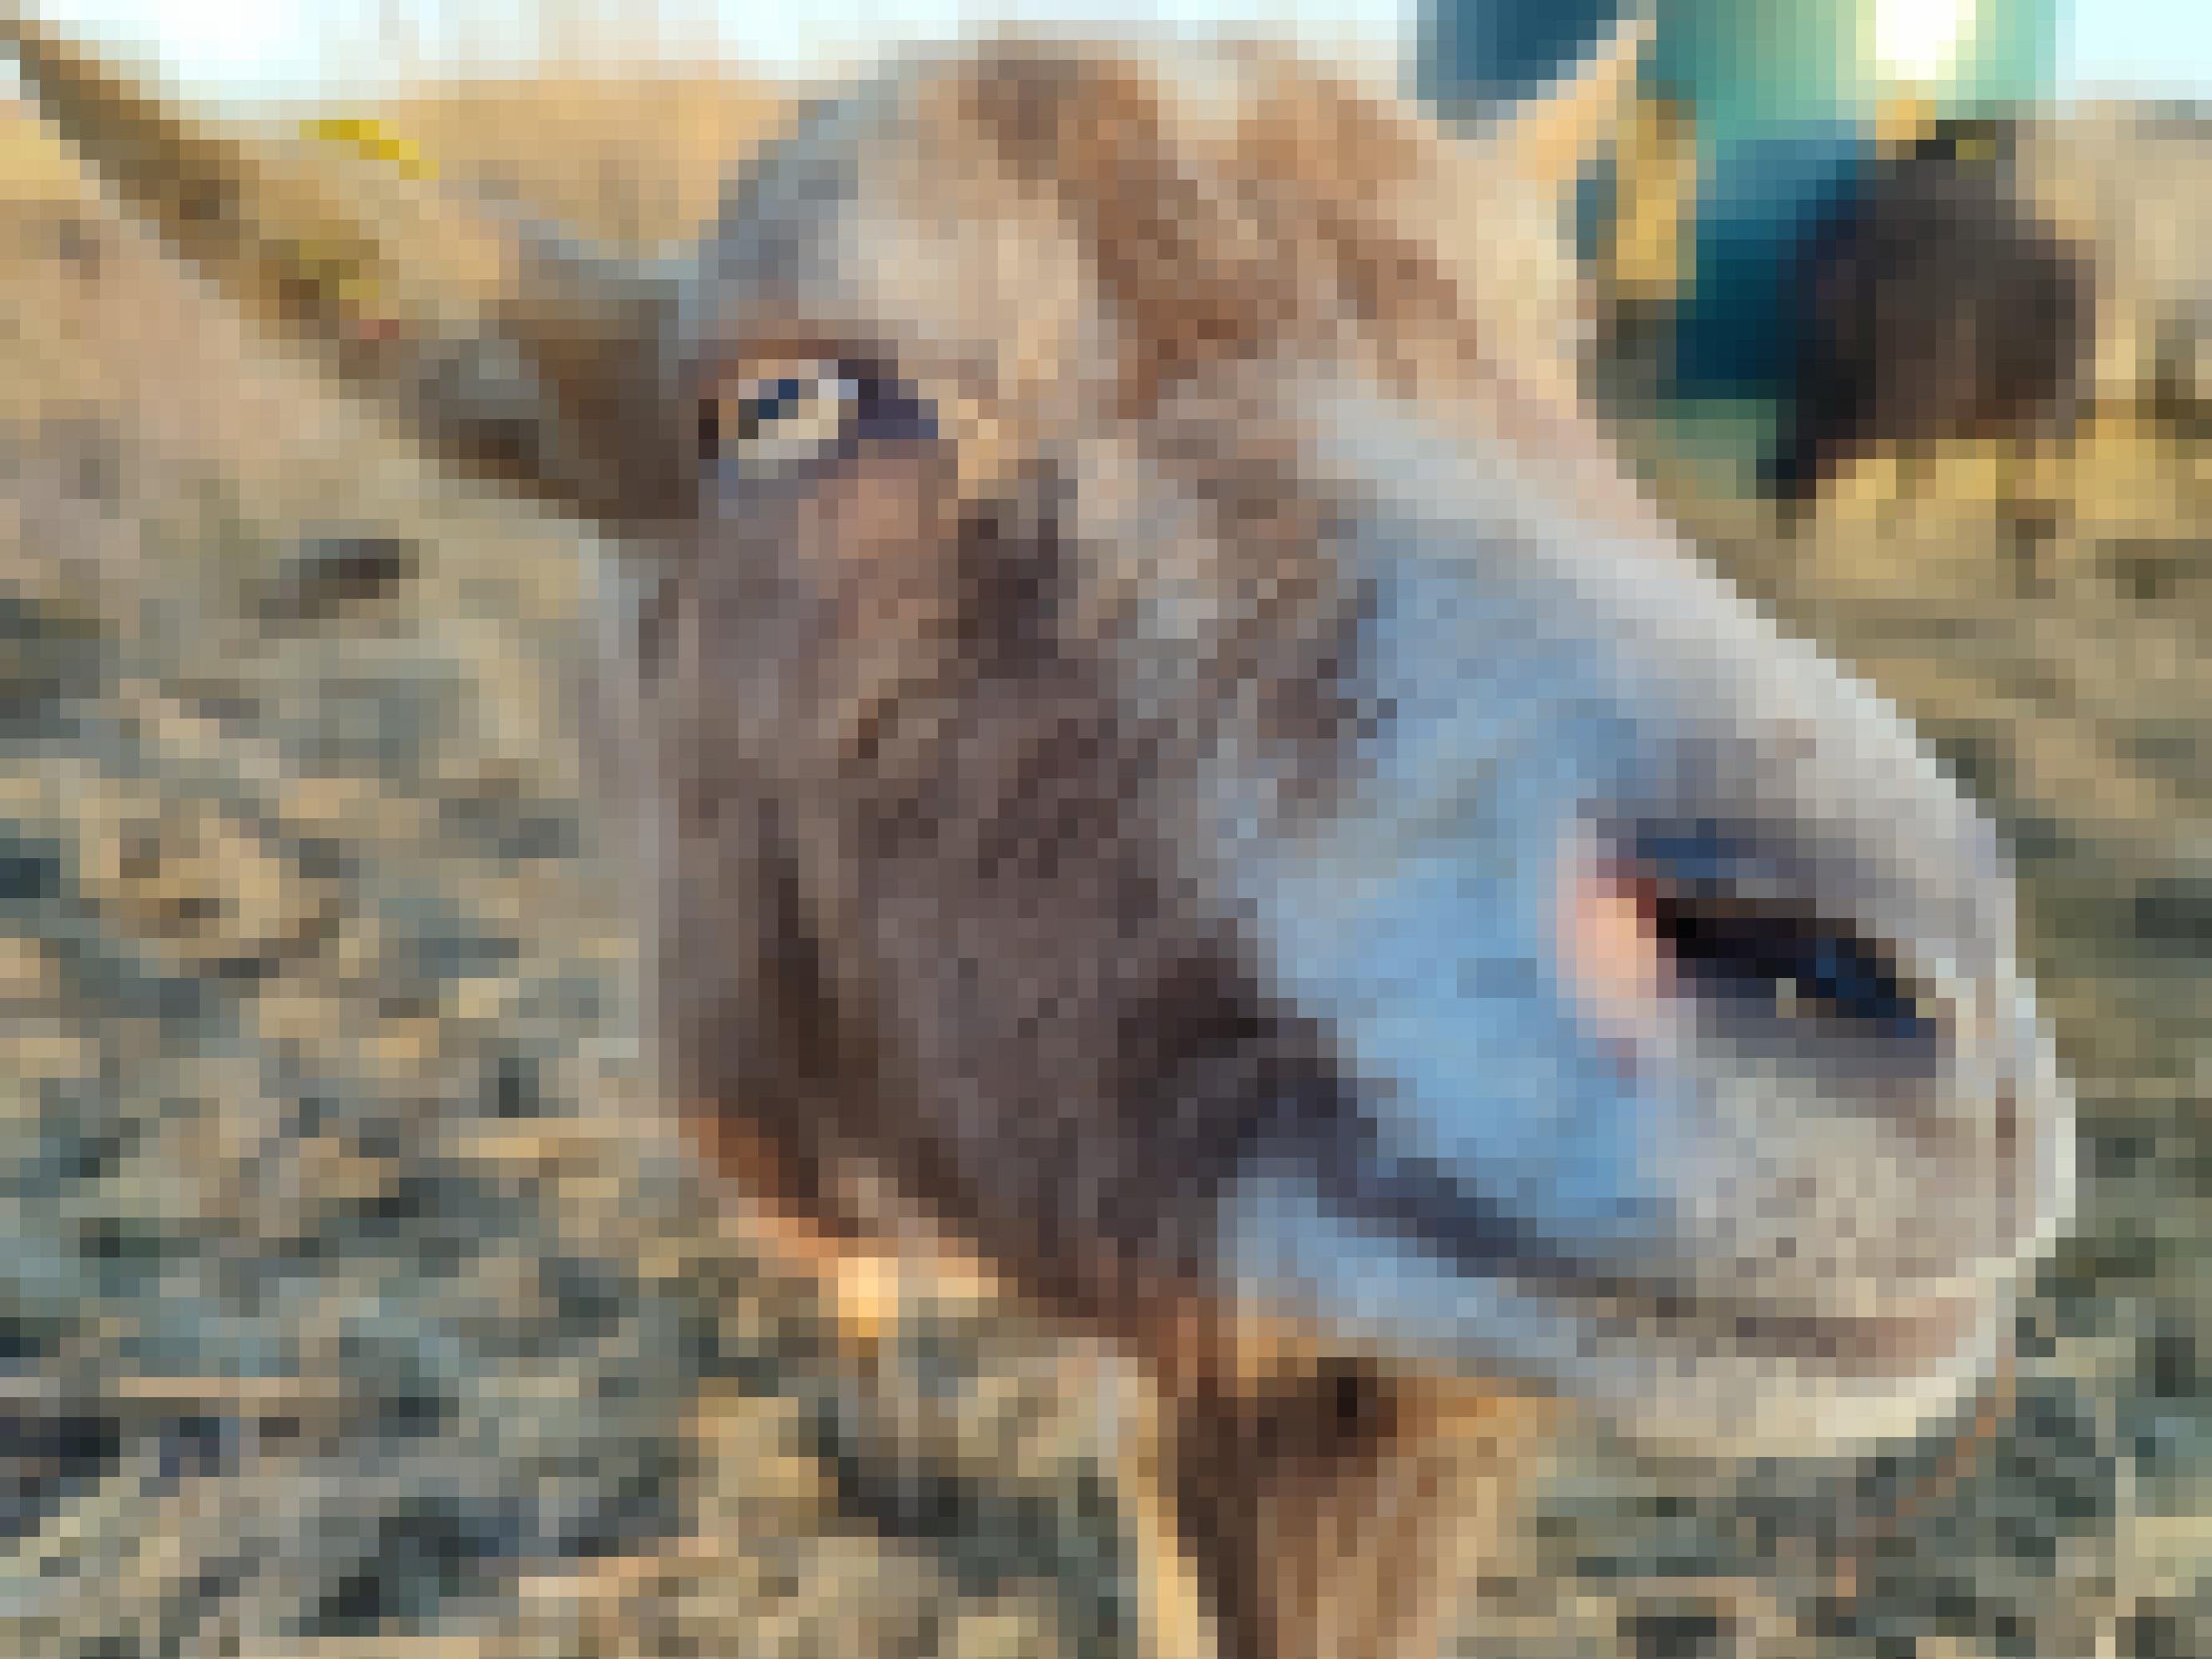 Eine Ziege mit sandfarbenen Fell, gelb-grünen Augen und der typischen rechteckigen Pupille